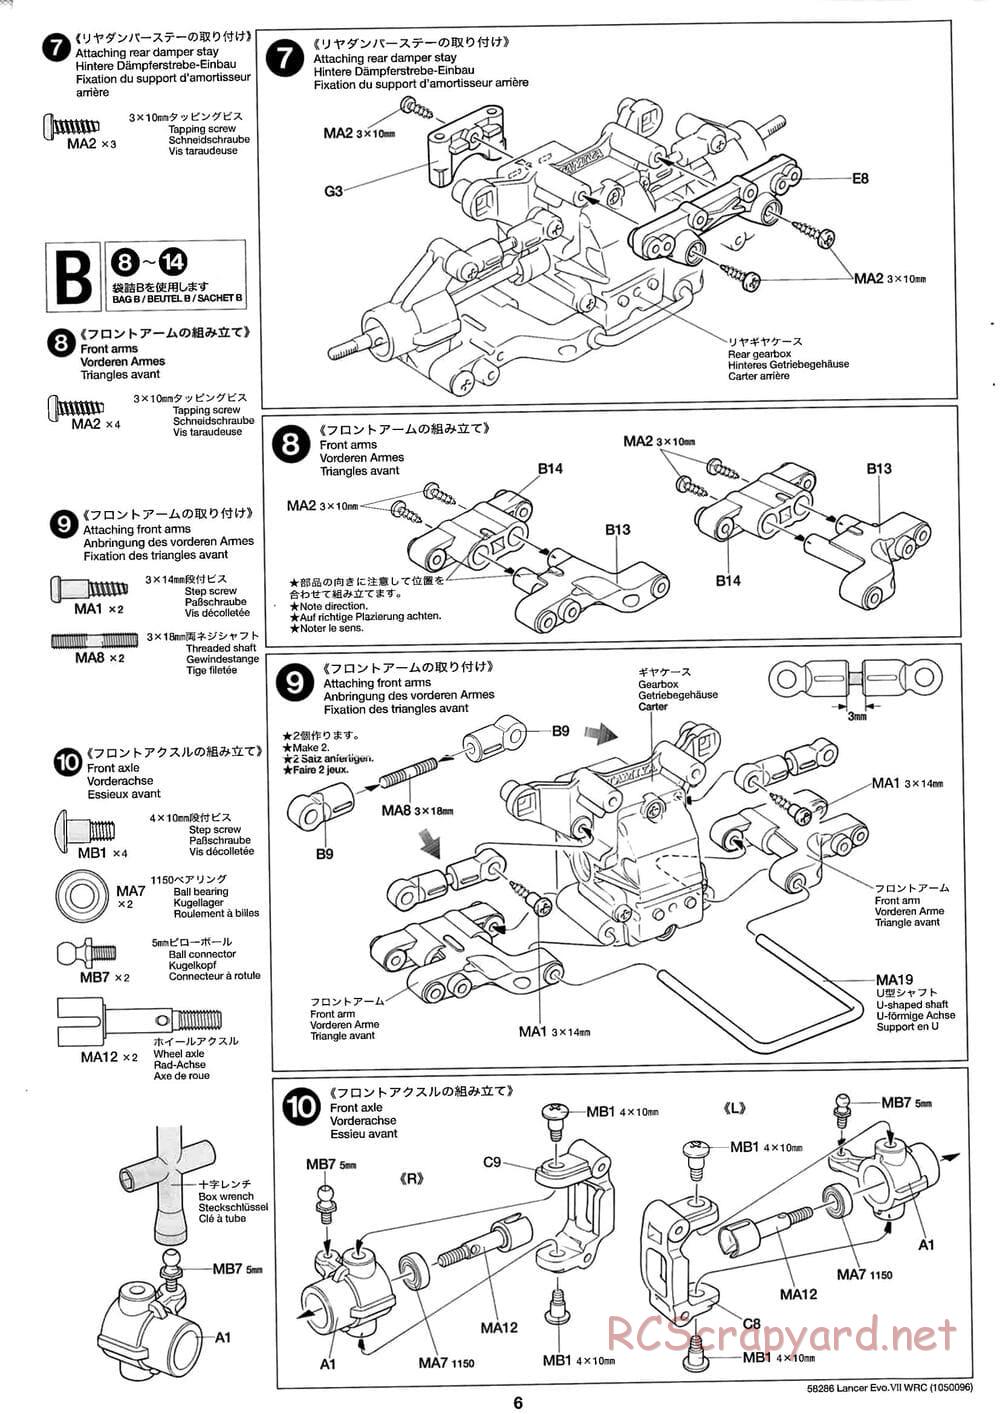 Tamiya - Mitsubishi Lancer Evolution VII WRC - TB-01 Chassis - Manual - Page 6